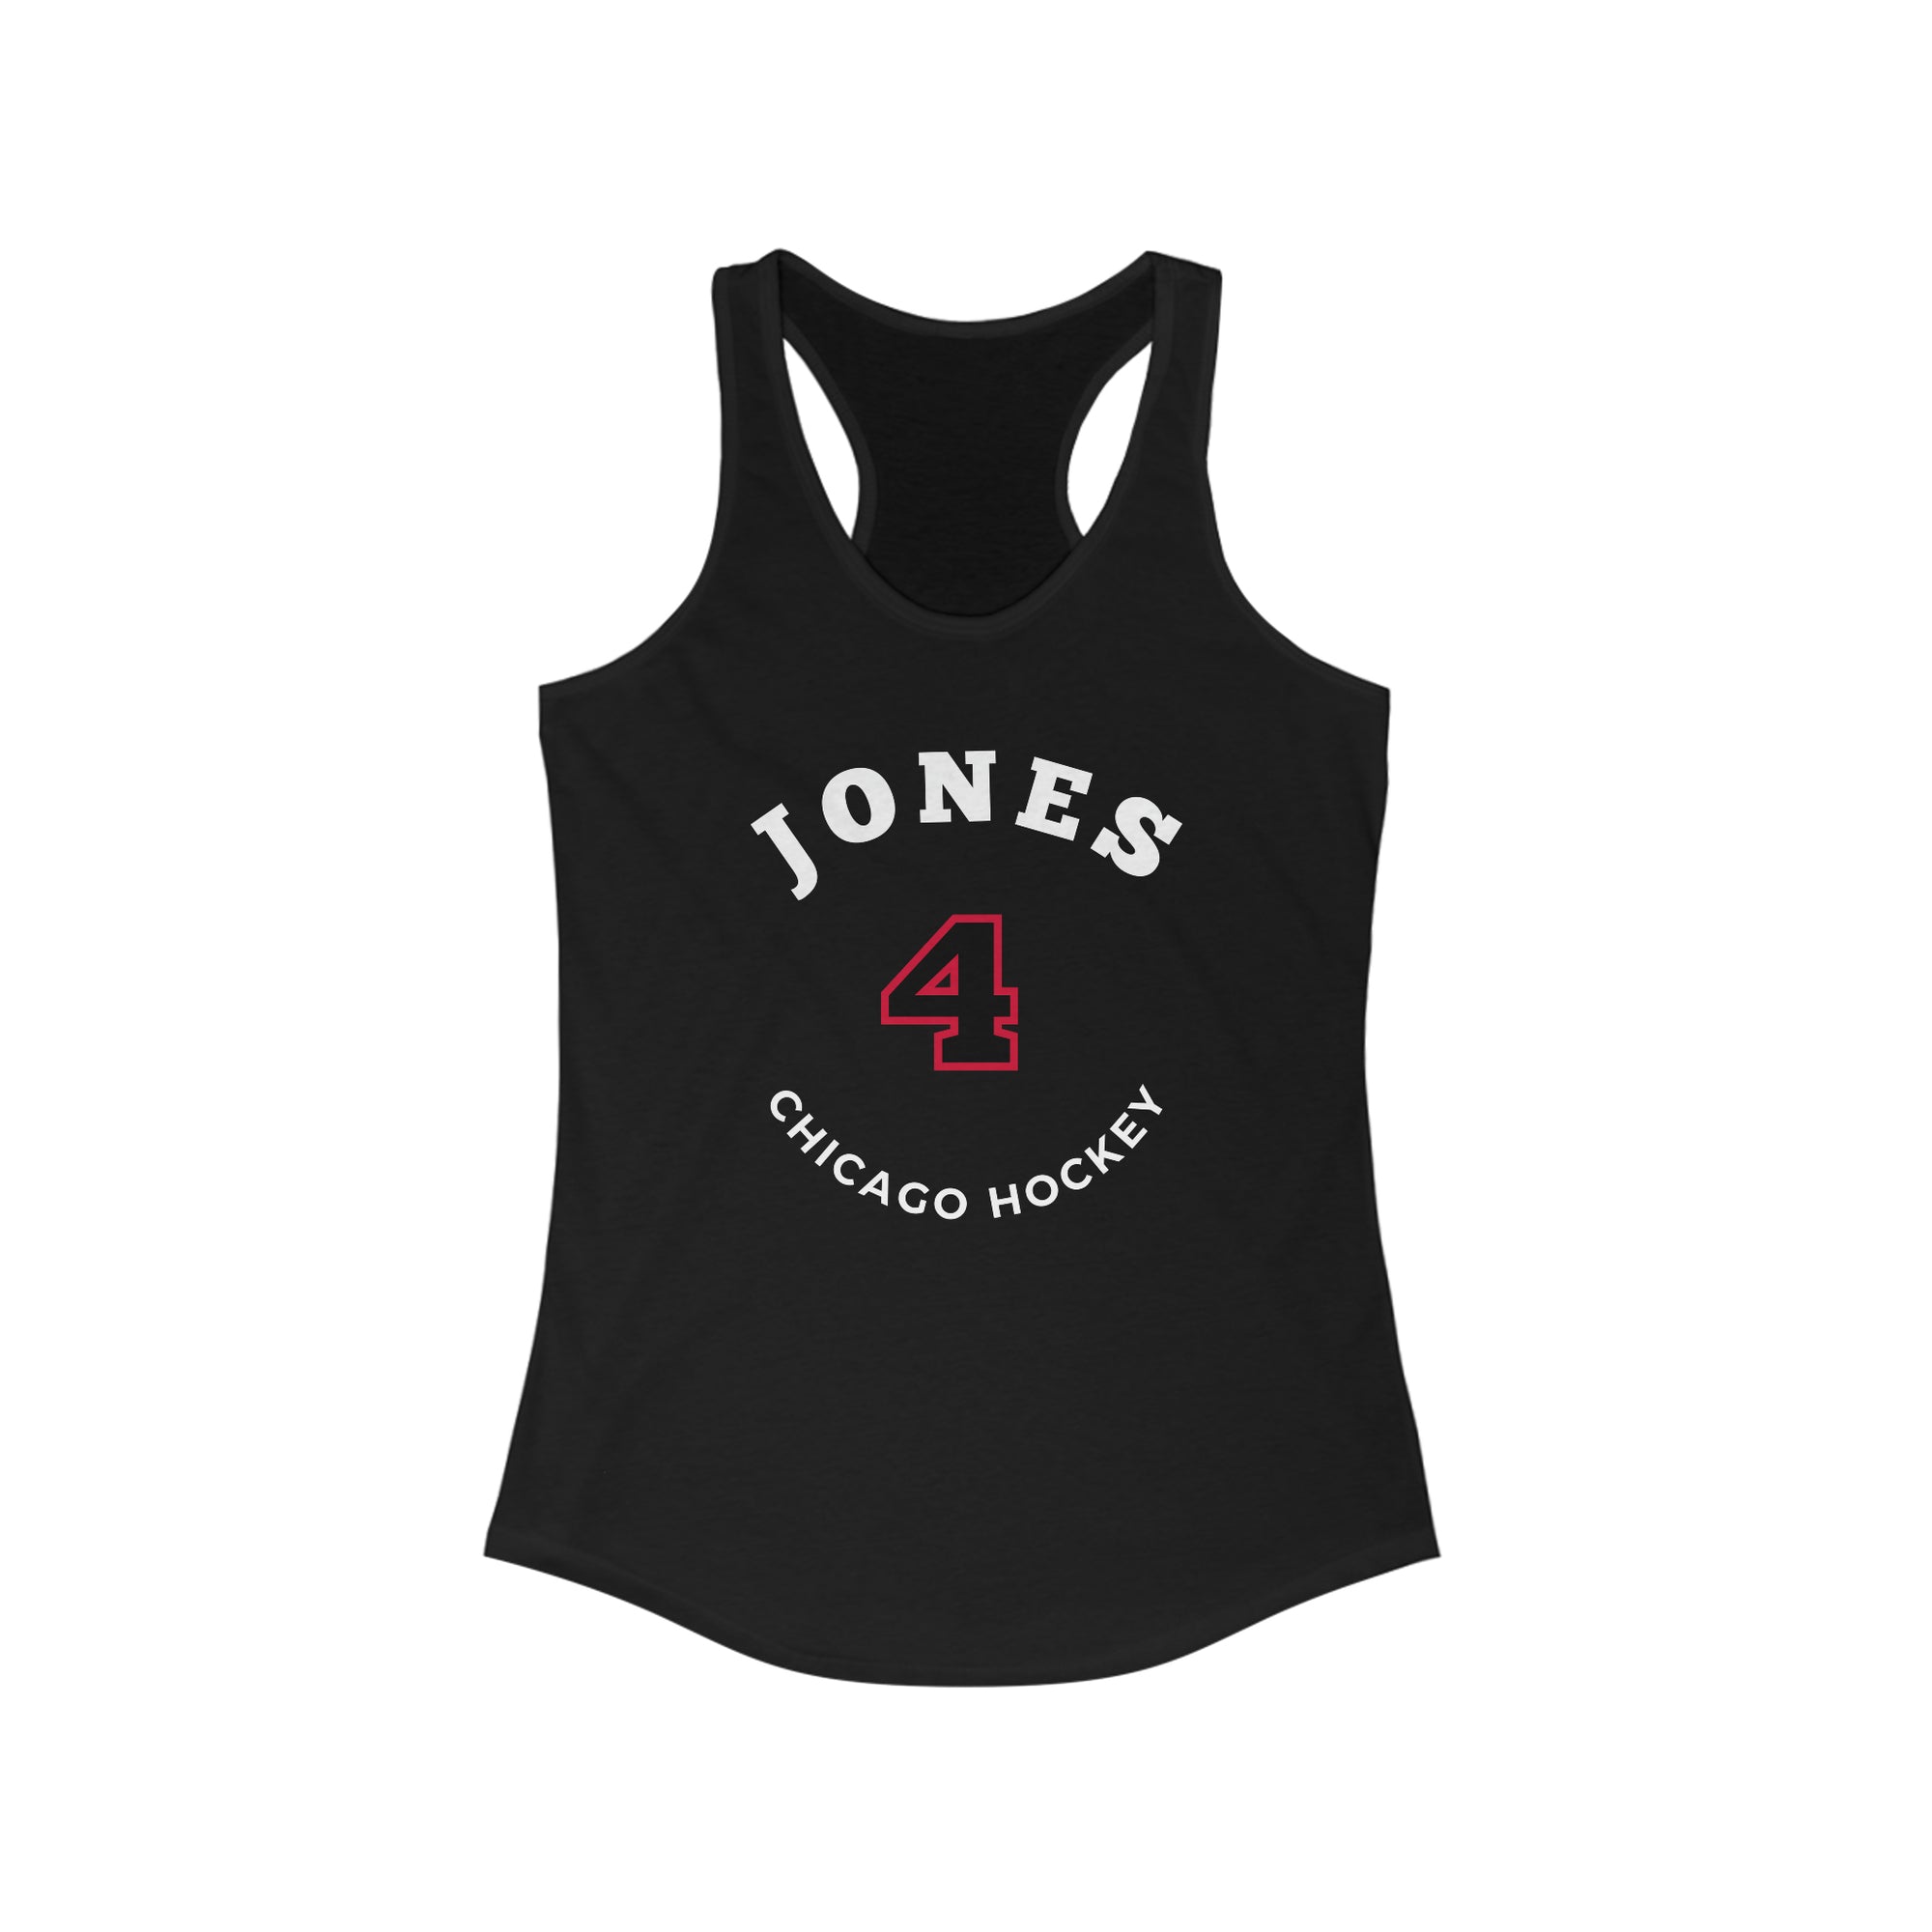 Jones 4 Chicago Hockey Number Arch Design Women's Ideal Racerback Tank Top